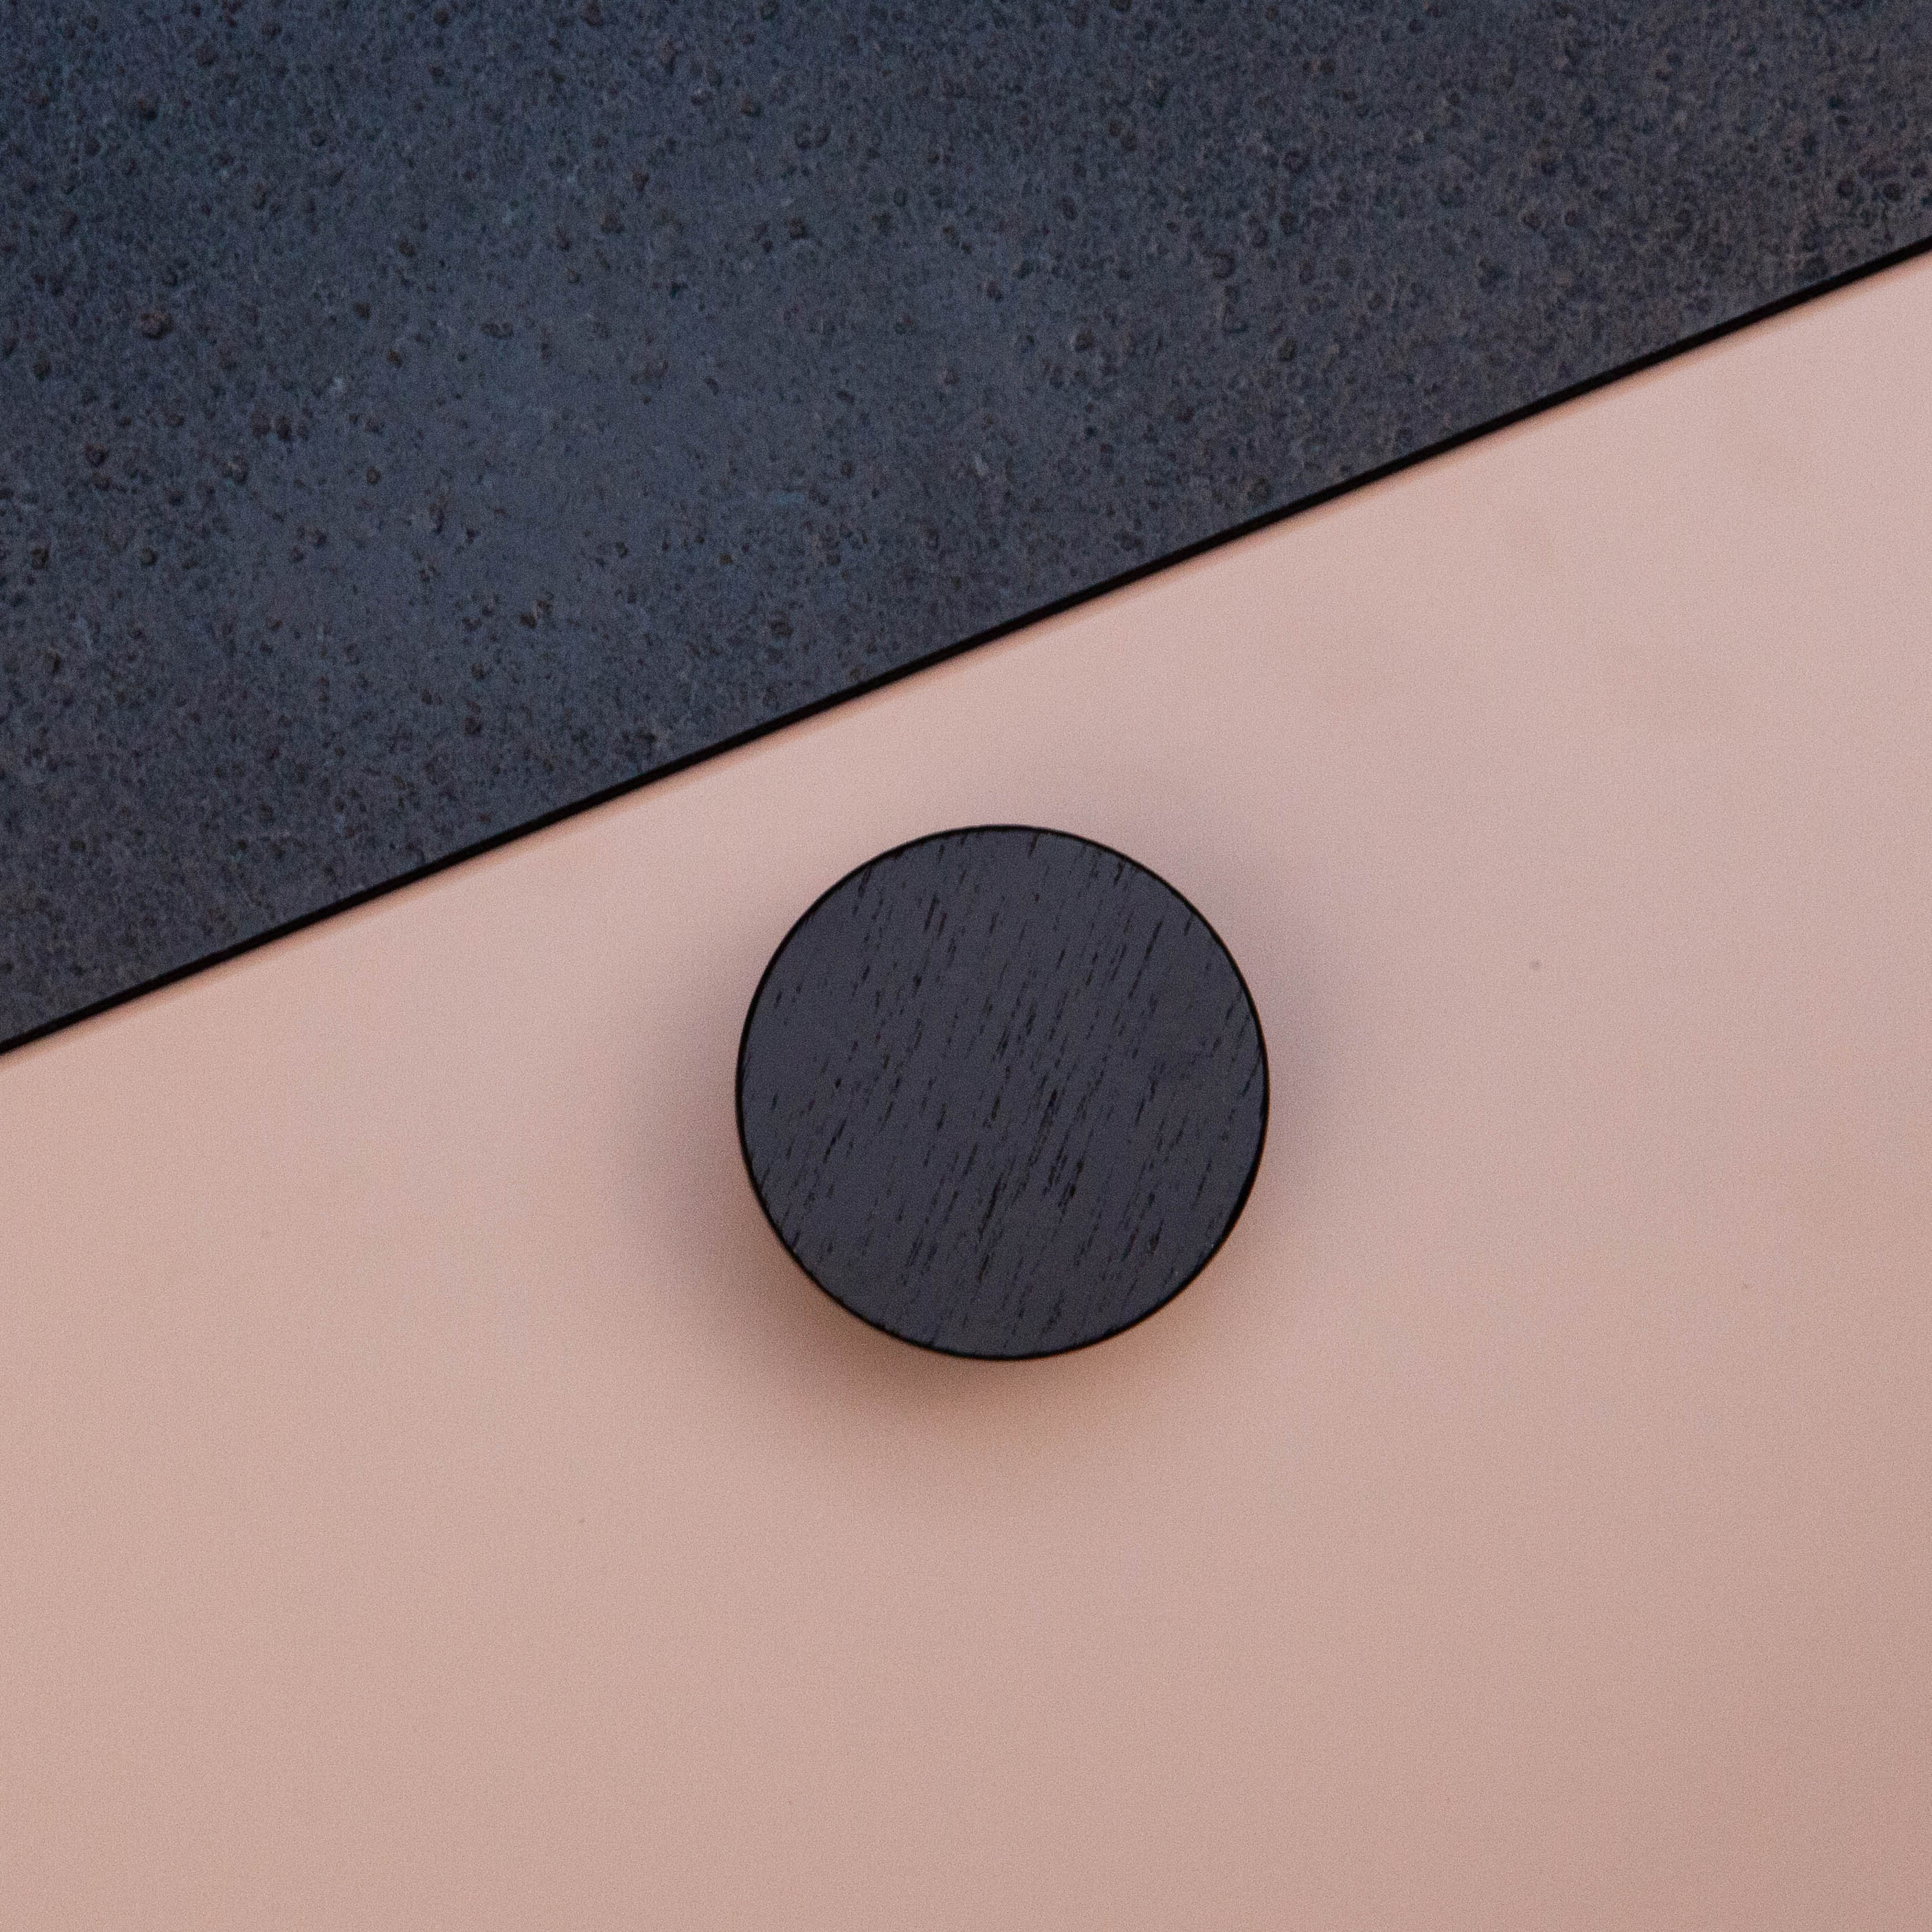 Bouton Bouton Circum, couleur Bois noir, ref 255645-11, dimensions 48 x 48 mm